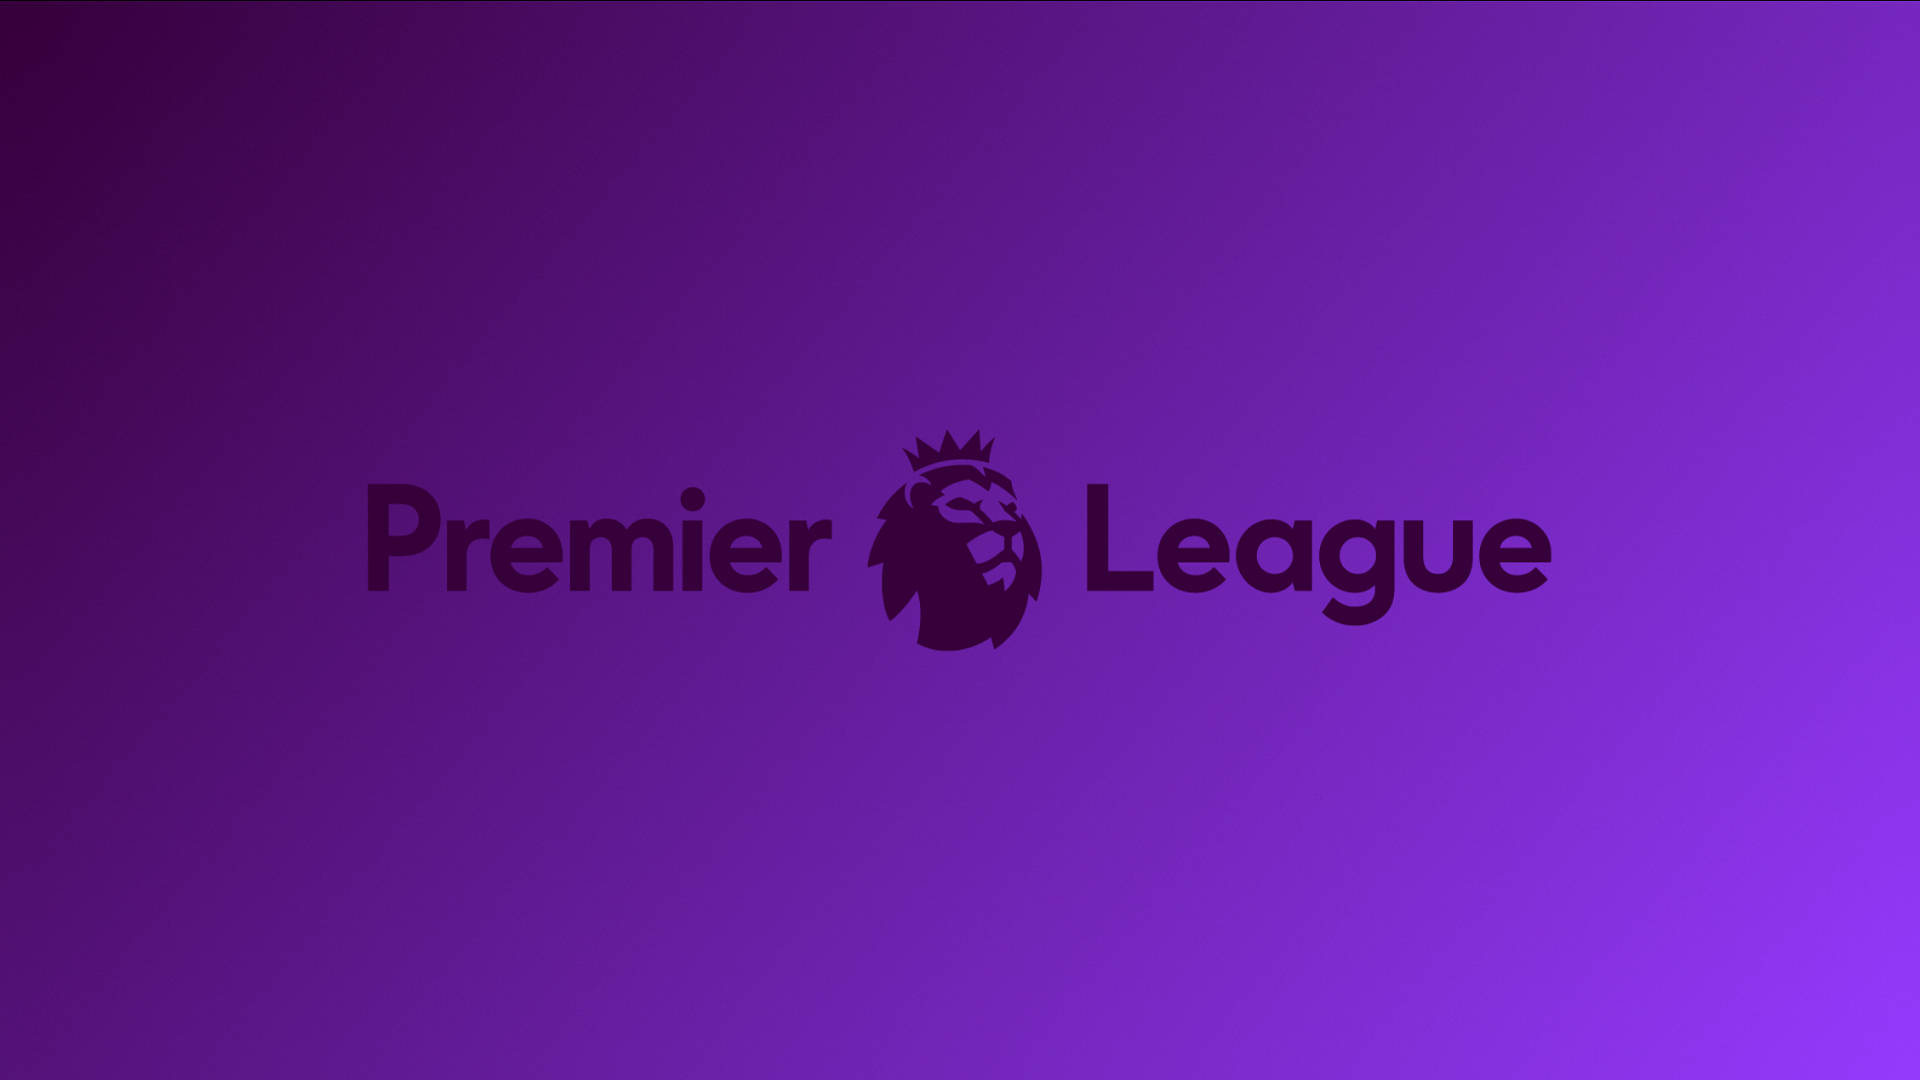 Premier League In Purple Background